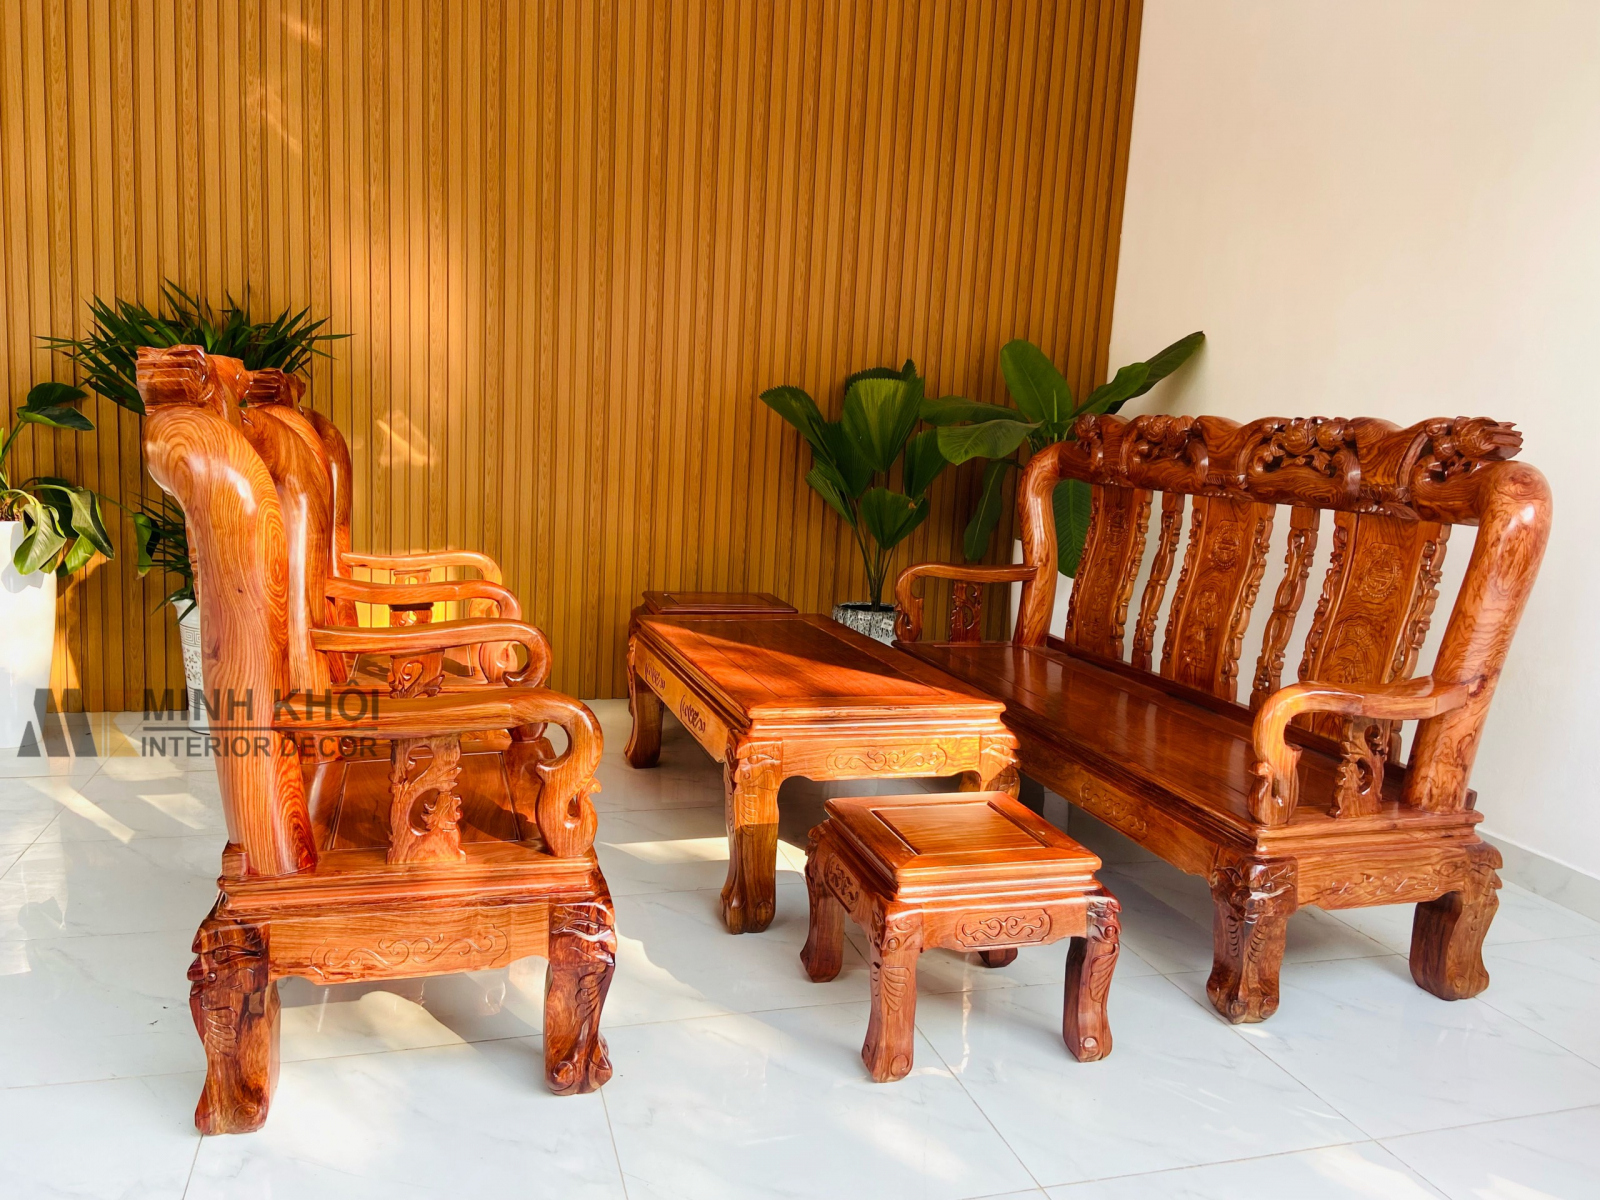 Với những chiếc ghế được chế tác tỉ mỉ và sử dụng loại gỗ hương chất lượng cao, sản phẩm không chỉ đem lại vẻ đẹp hoàng gia mà còn đảm bảo sự thoải mái cho người sử dụng. Hãy cùng khám phá những hình ảnh tuyệt đẹp của bộ bàn ghế gỗ hương đẳng cấp này để trang trí ngôi nhà của bạn.